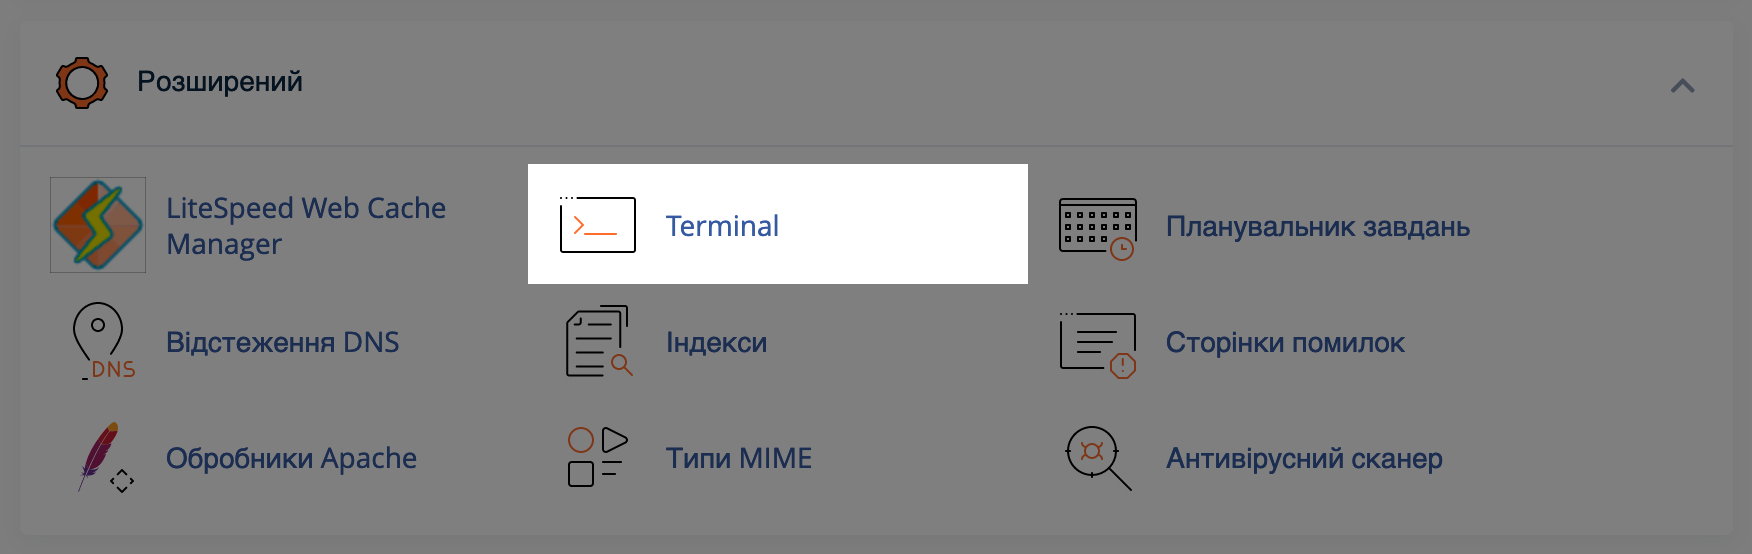 Як додати репозиторій через термінал?